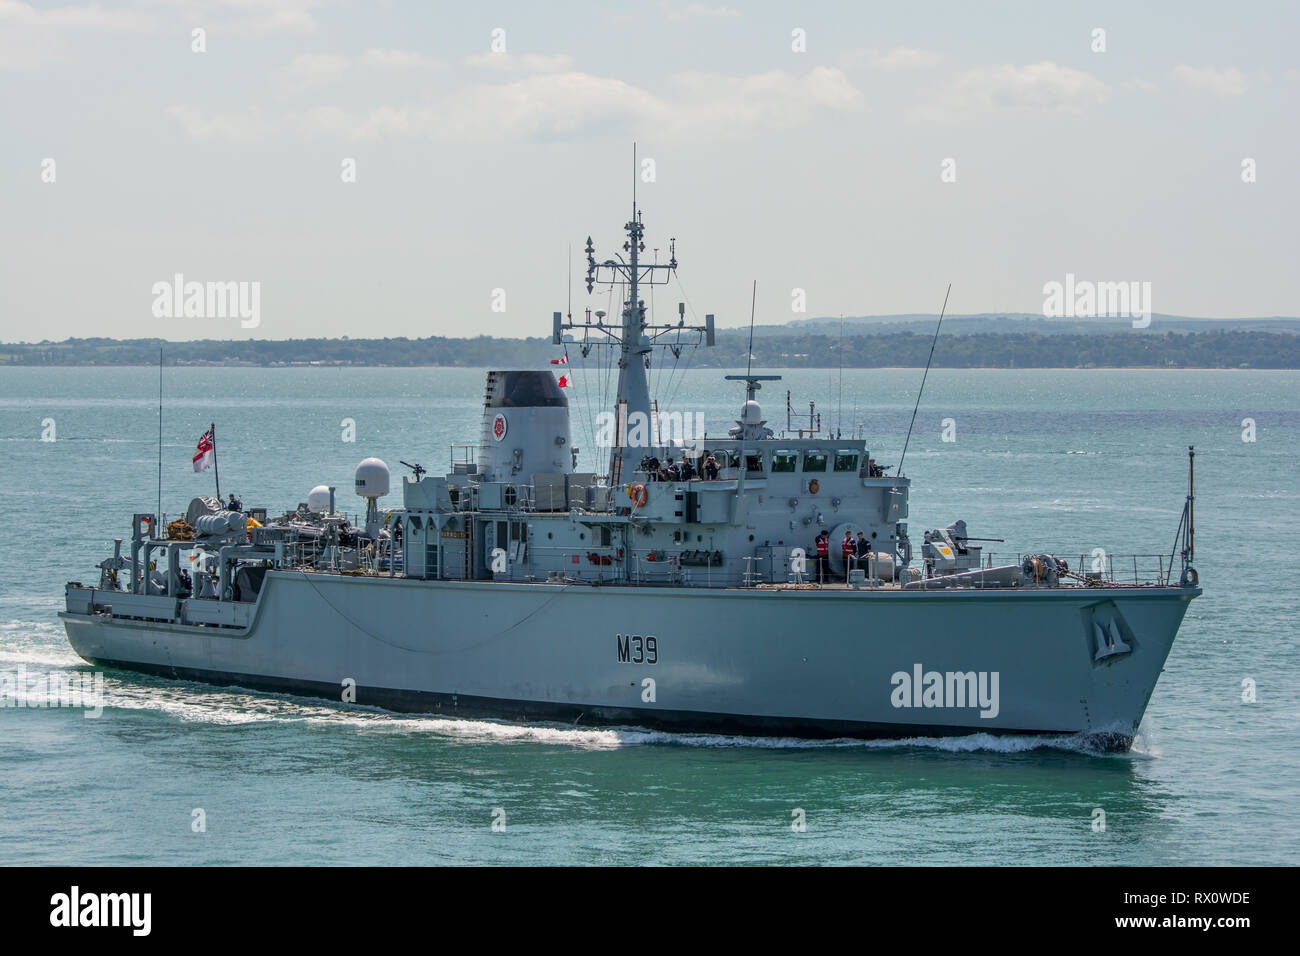 Die britische Royal Navy Kriegsschiff HMS Hurworth (M39), eine Jagd Klasse Minenkrieg Gefäß, in Portsmouth, Großbritannien am 18. Juni 2015 eingehen. Stockfoto